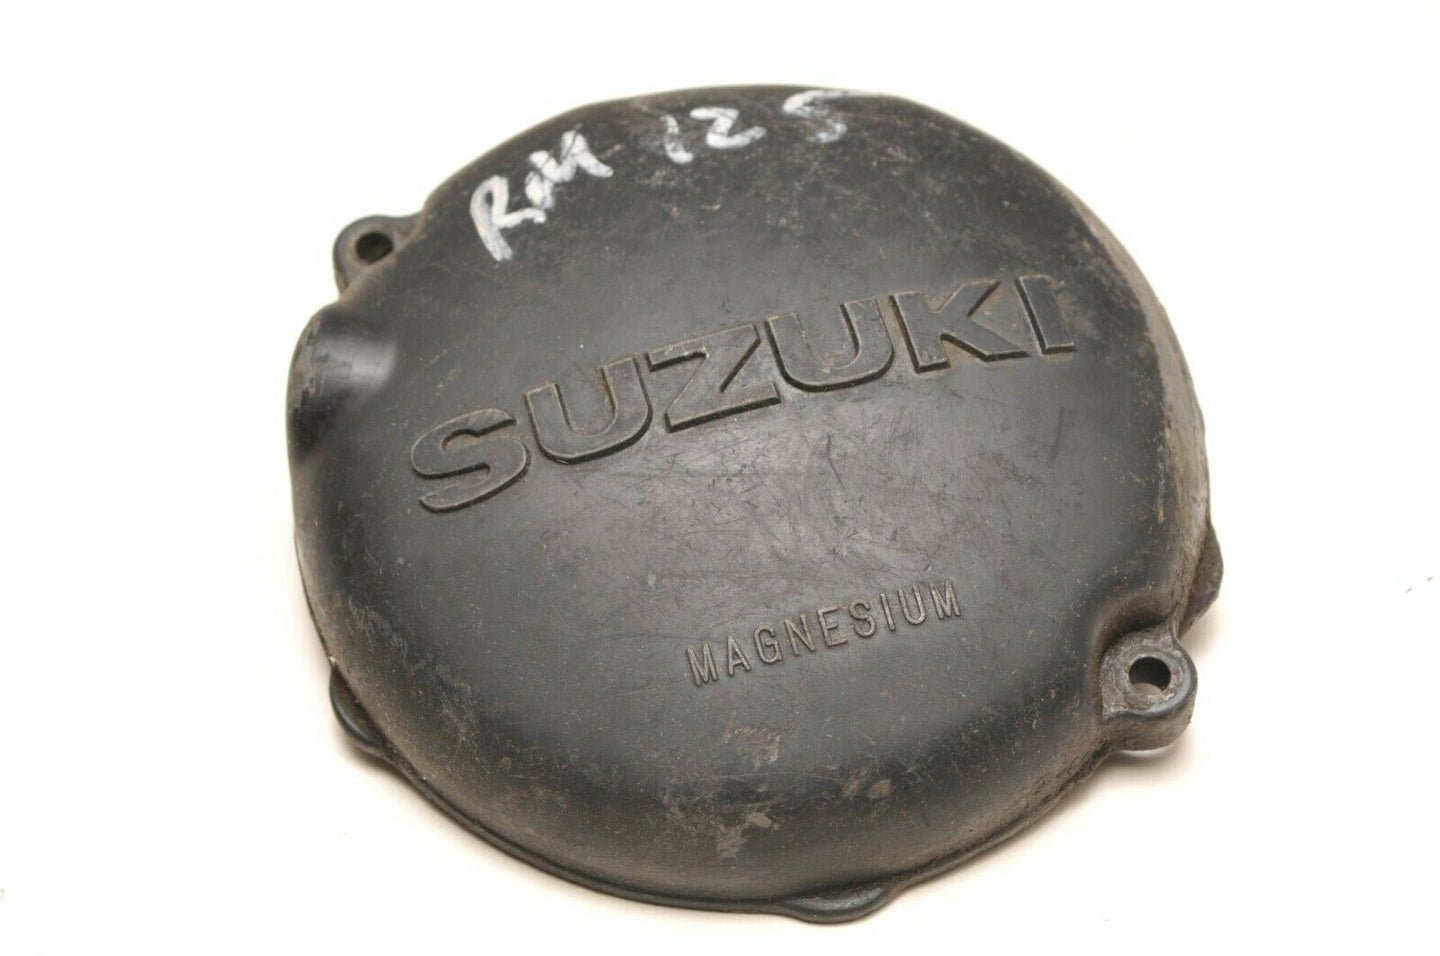 OEM Suzuki 11351-14110 Engine Cover - Magneto - 1981-1982-1983